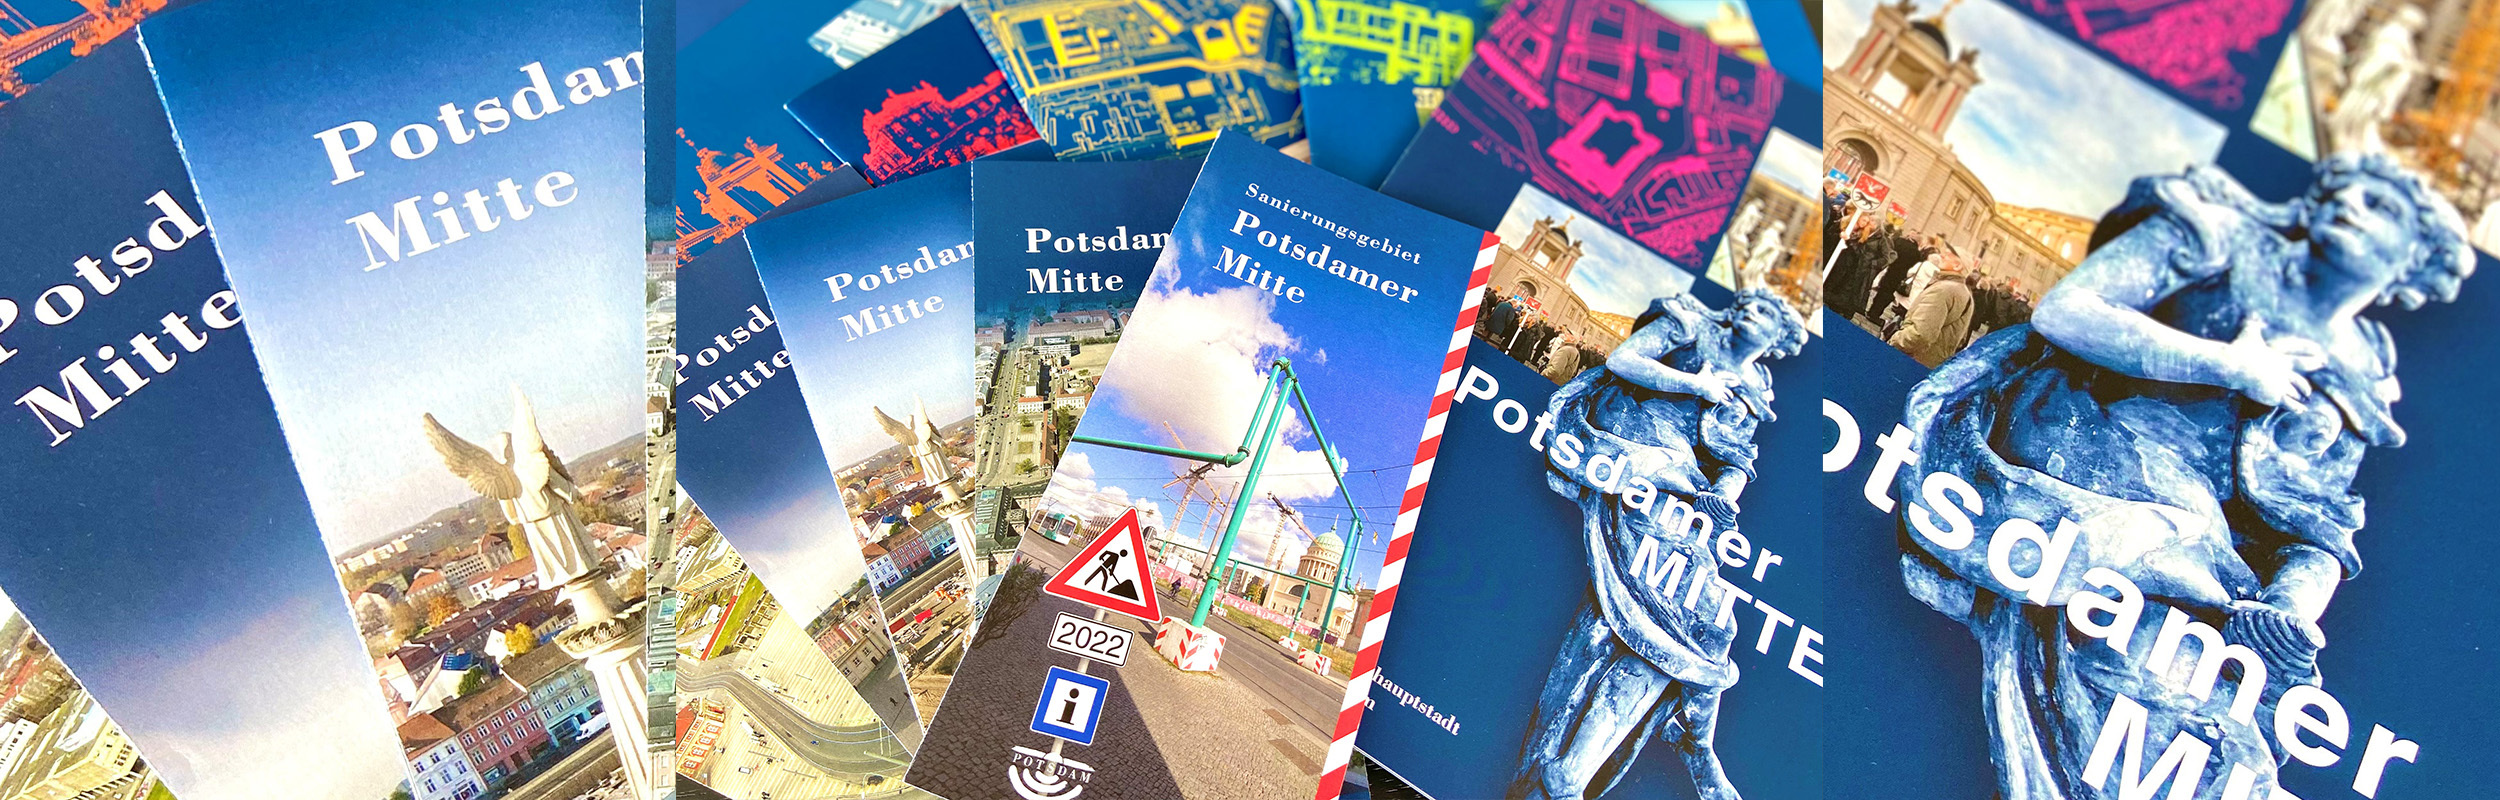 Foto: Faltblätter und Broschüren über die Potsdamer Mitte.